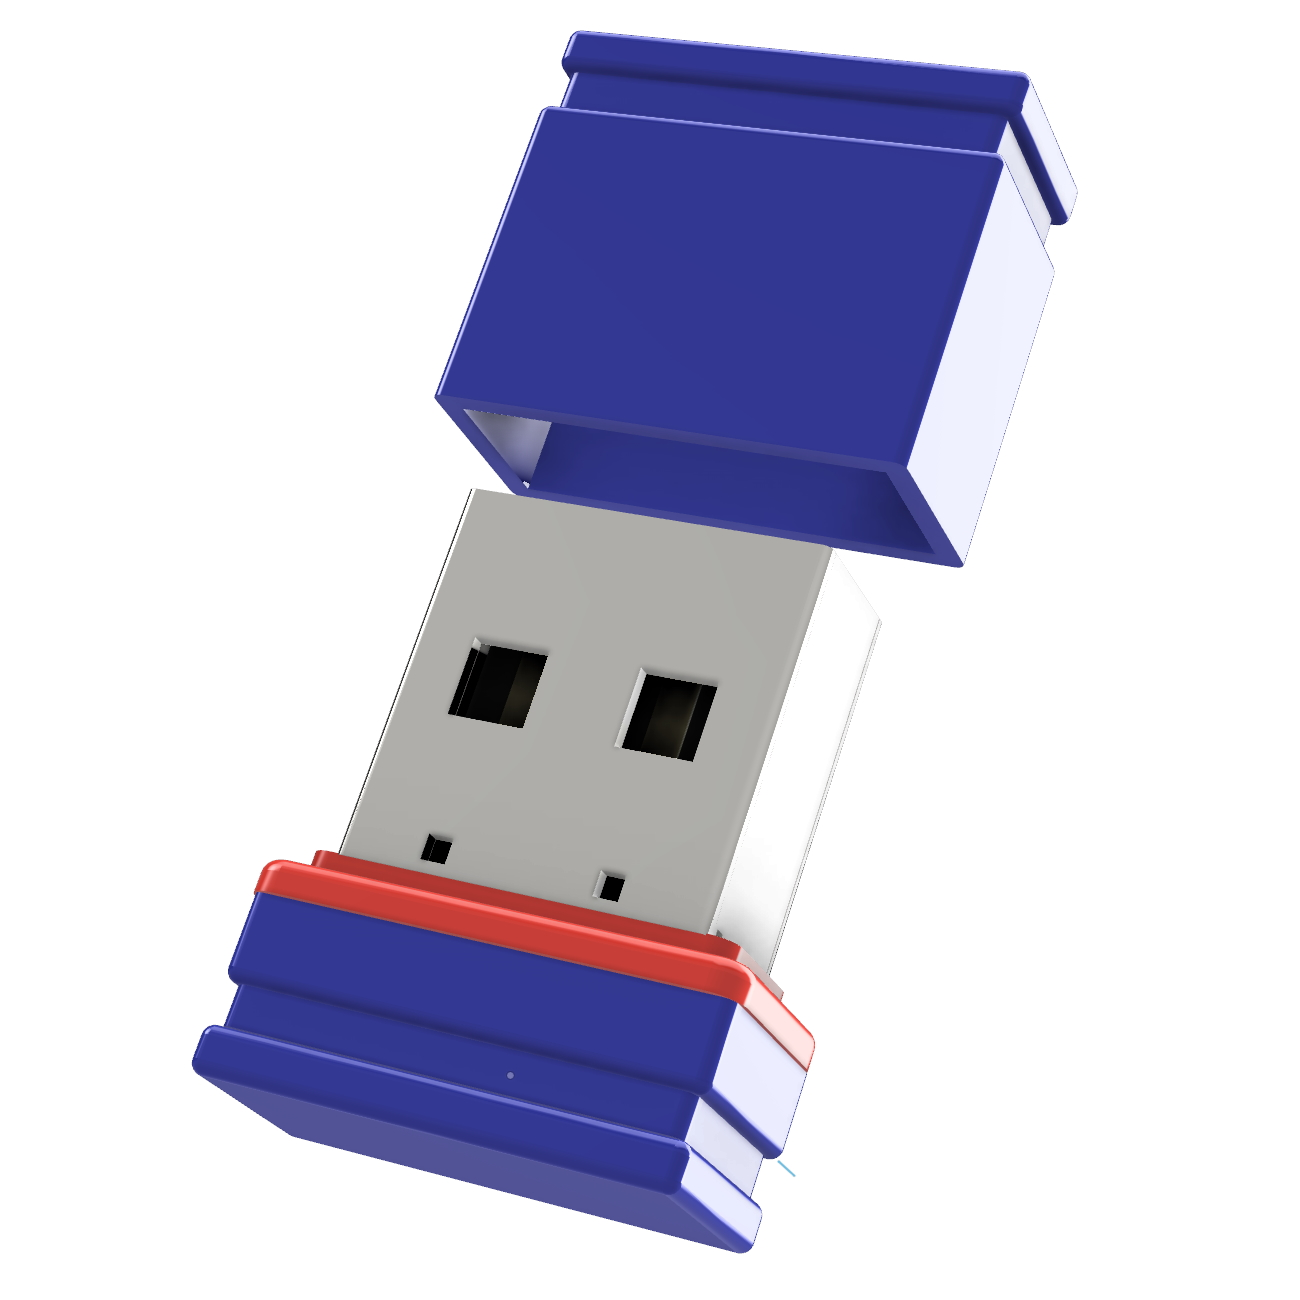 GERMANY Mini P1 ®ULTRA GB) USB-Stick 16 USB (Blau/Rot,